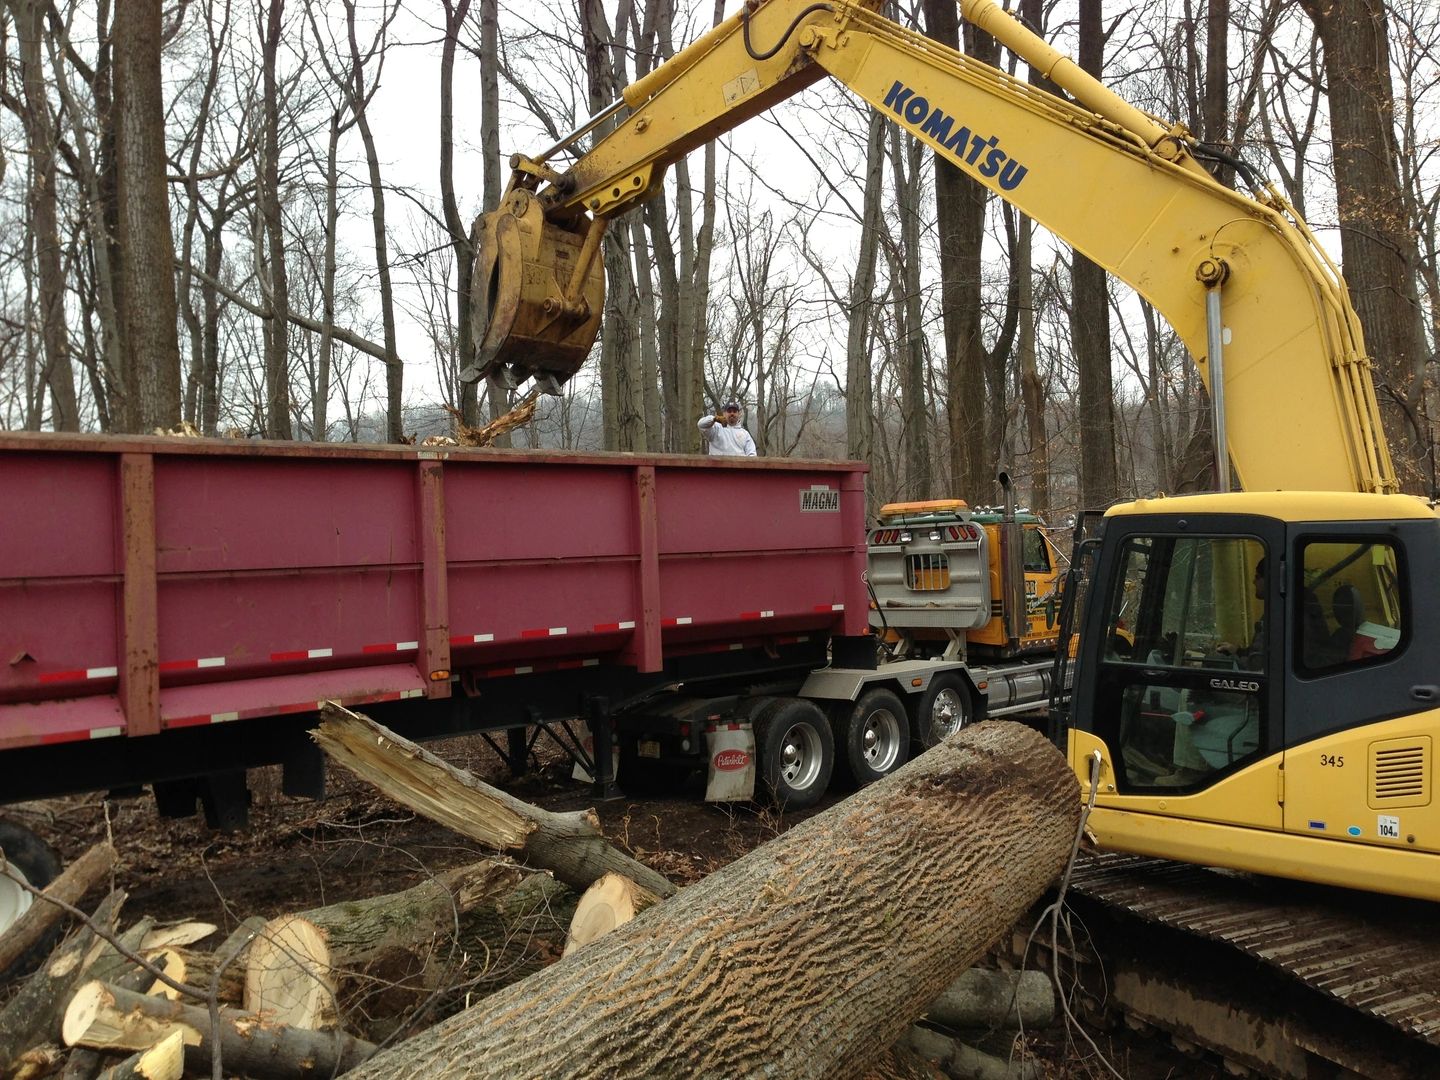 Bobcat putting logs into a dump truck